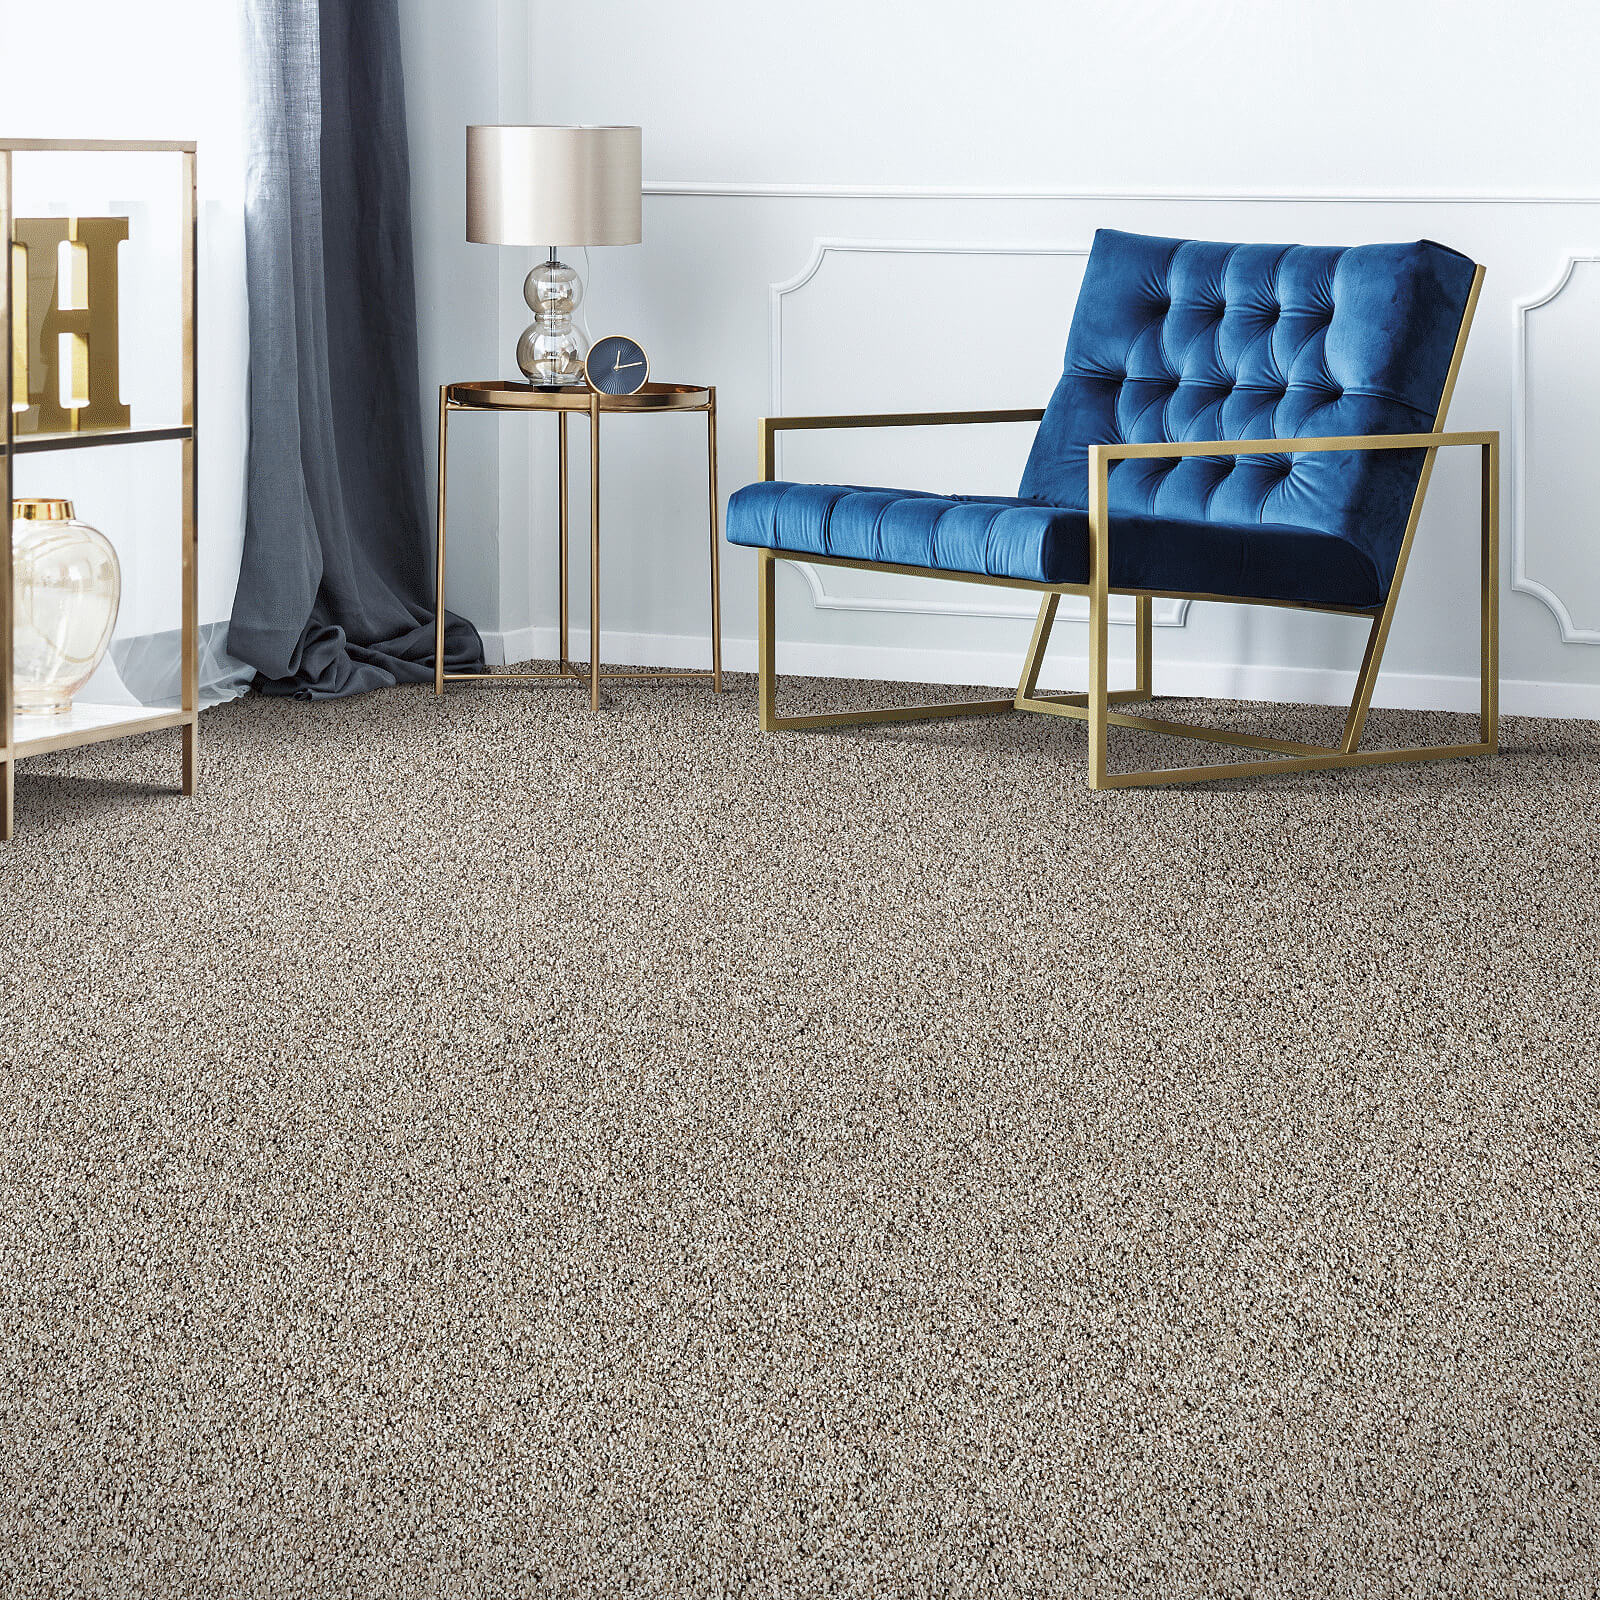 Blue chair on Carpet | C & C Tile & Carpet Co